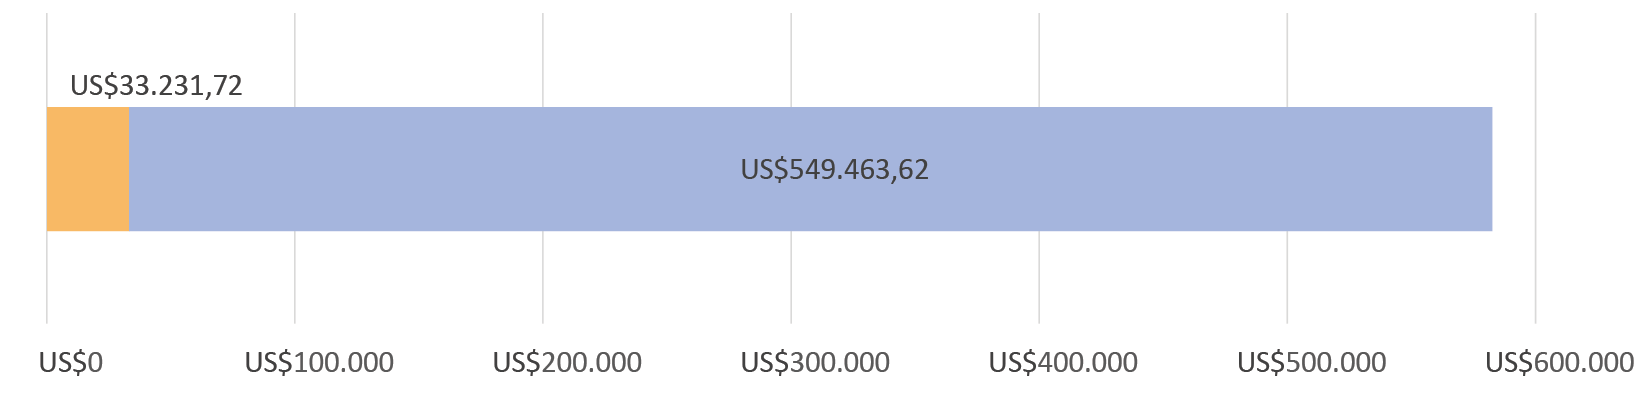 US$33.231,72 gastados; quedan US$549.463,62